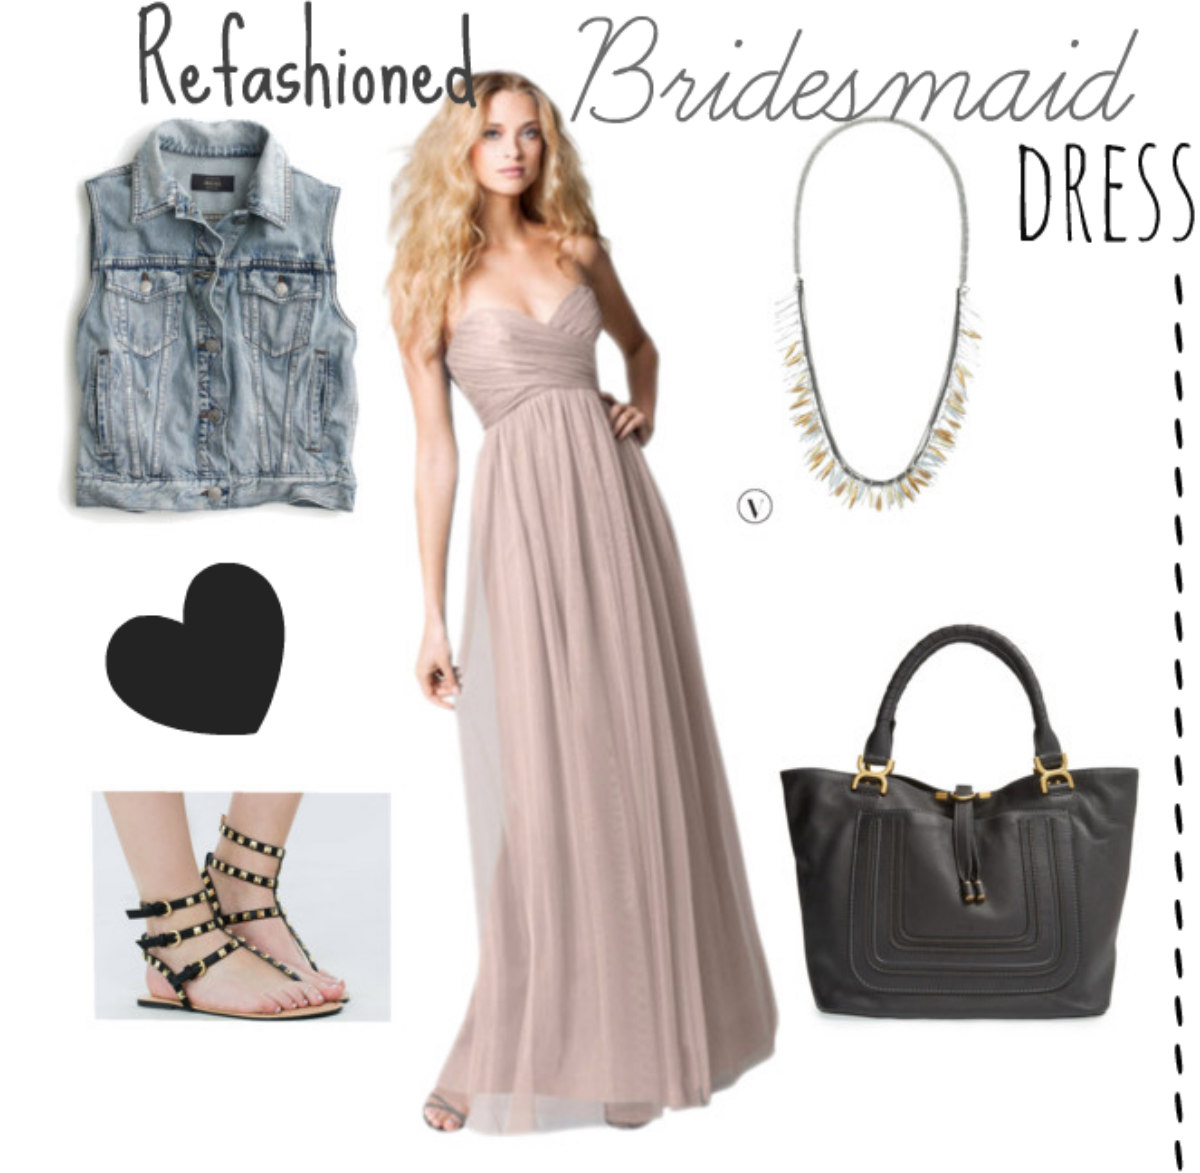 Refashioned bridesmaid dress